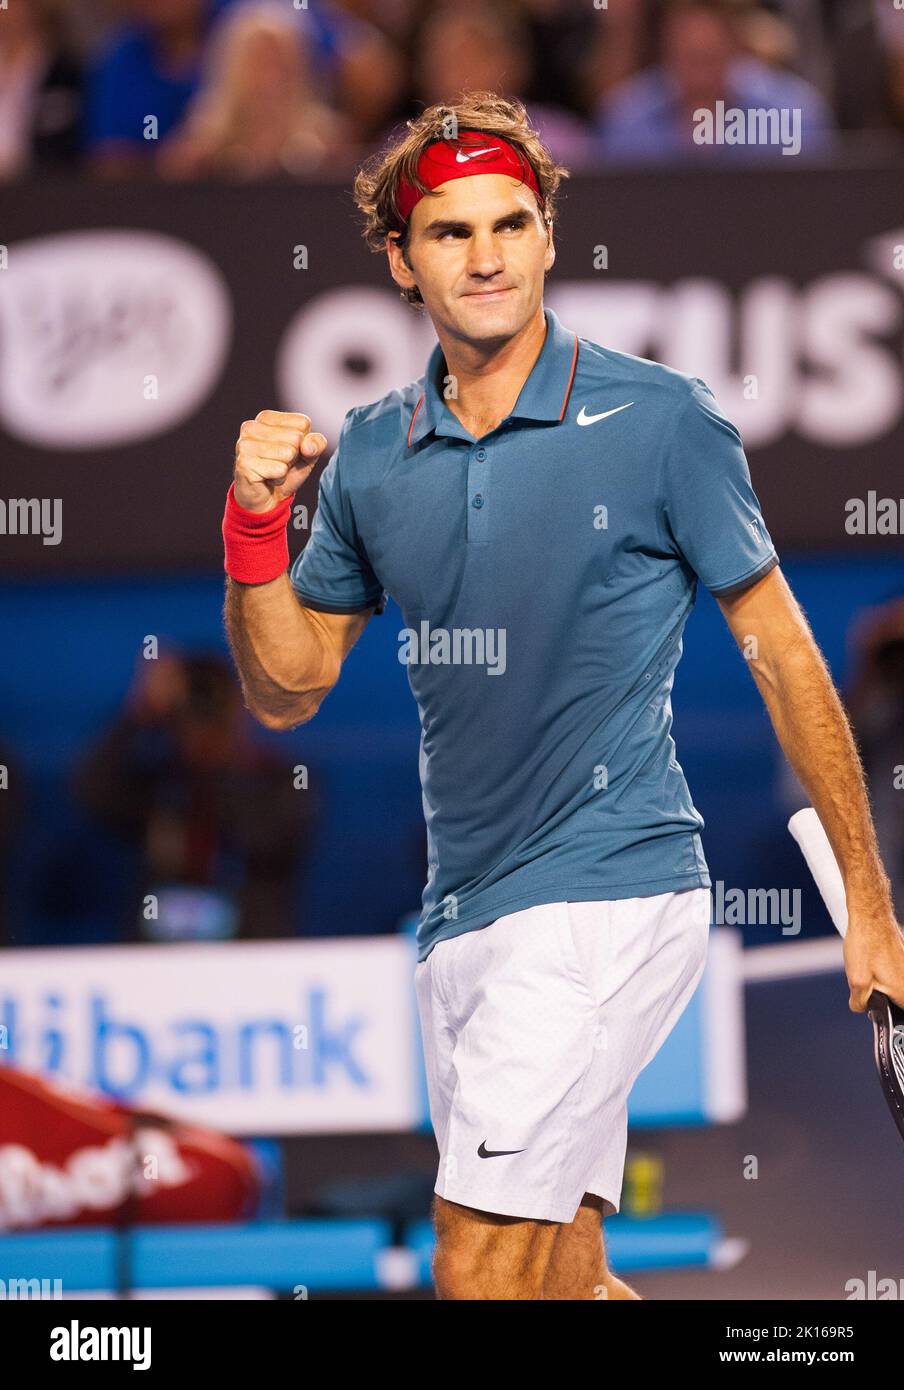 Roger Federer (sui) ha affrontato J.W. Tonga (fra) nel quarto round dell'Australian Open Men's Singles 2014. Fatturati come una partita di rancore, Federer si è facilmente spostato nei quarti di finale dove incontrerà Andy Murray GBR). Federer batte Tonga 6-3, 7-5, 6-4. Foto Stock